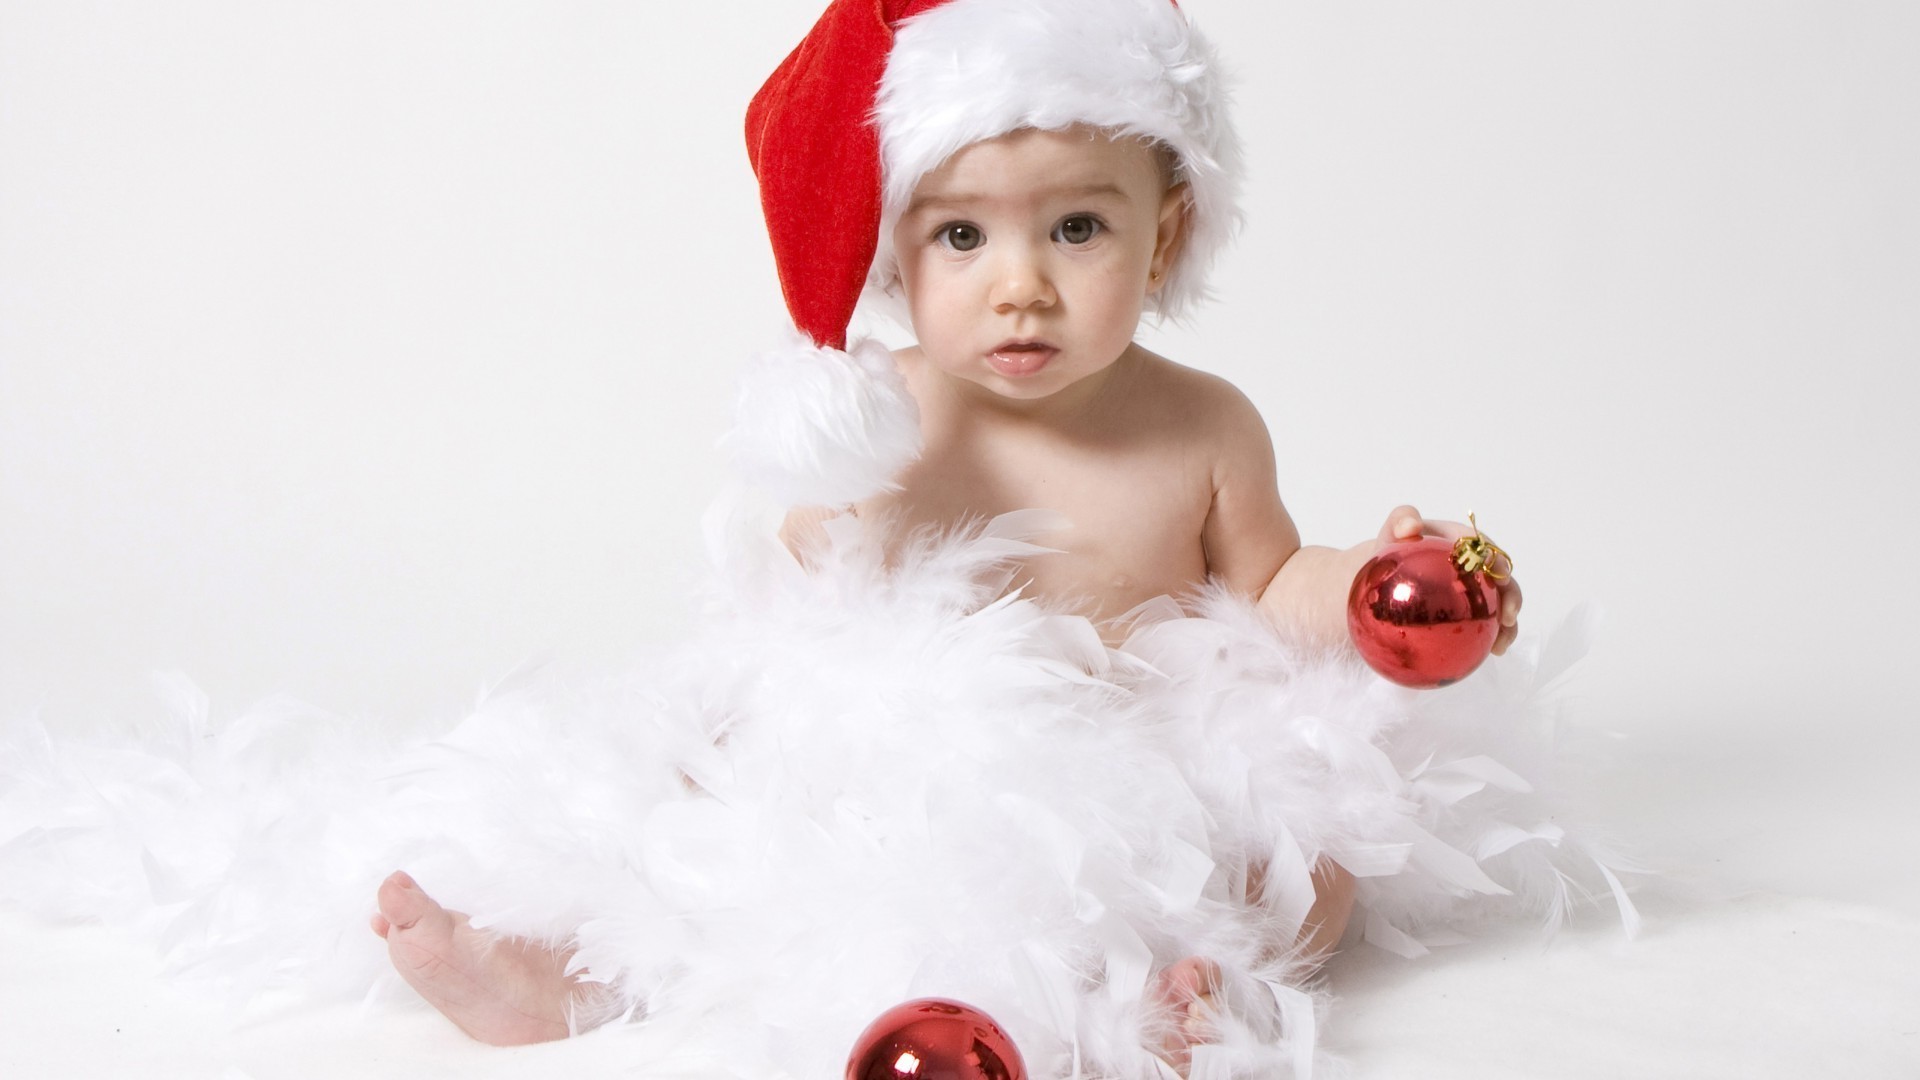 дети рождество зима ребенок крышка милые удовольствие мало праздник подарок мех снег невинность один крышка сюрприз костюм радость девушка счастье